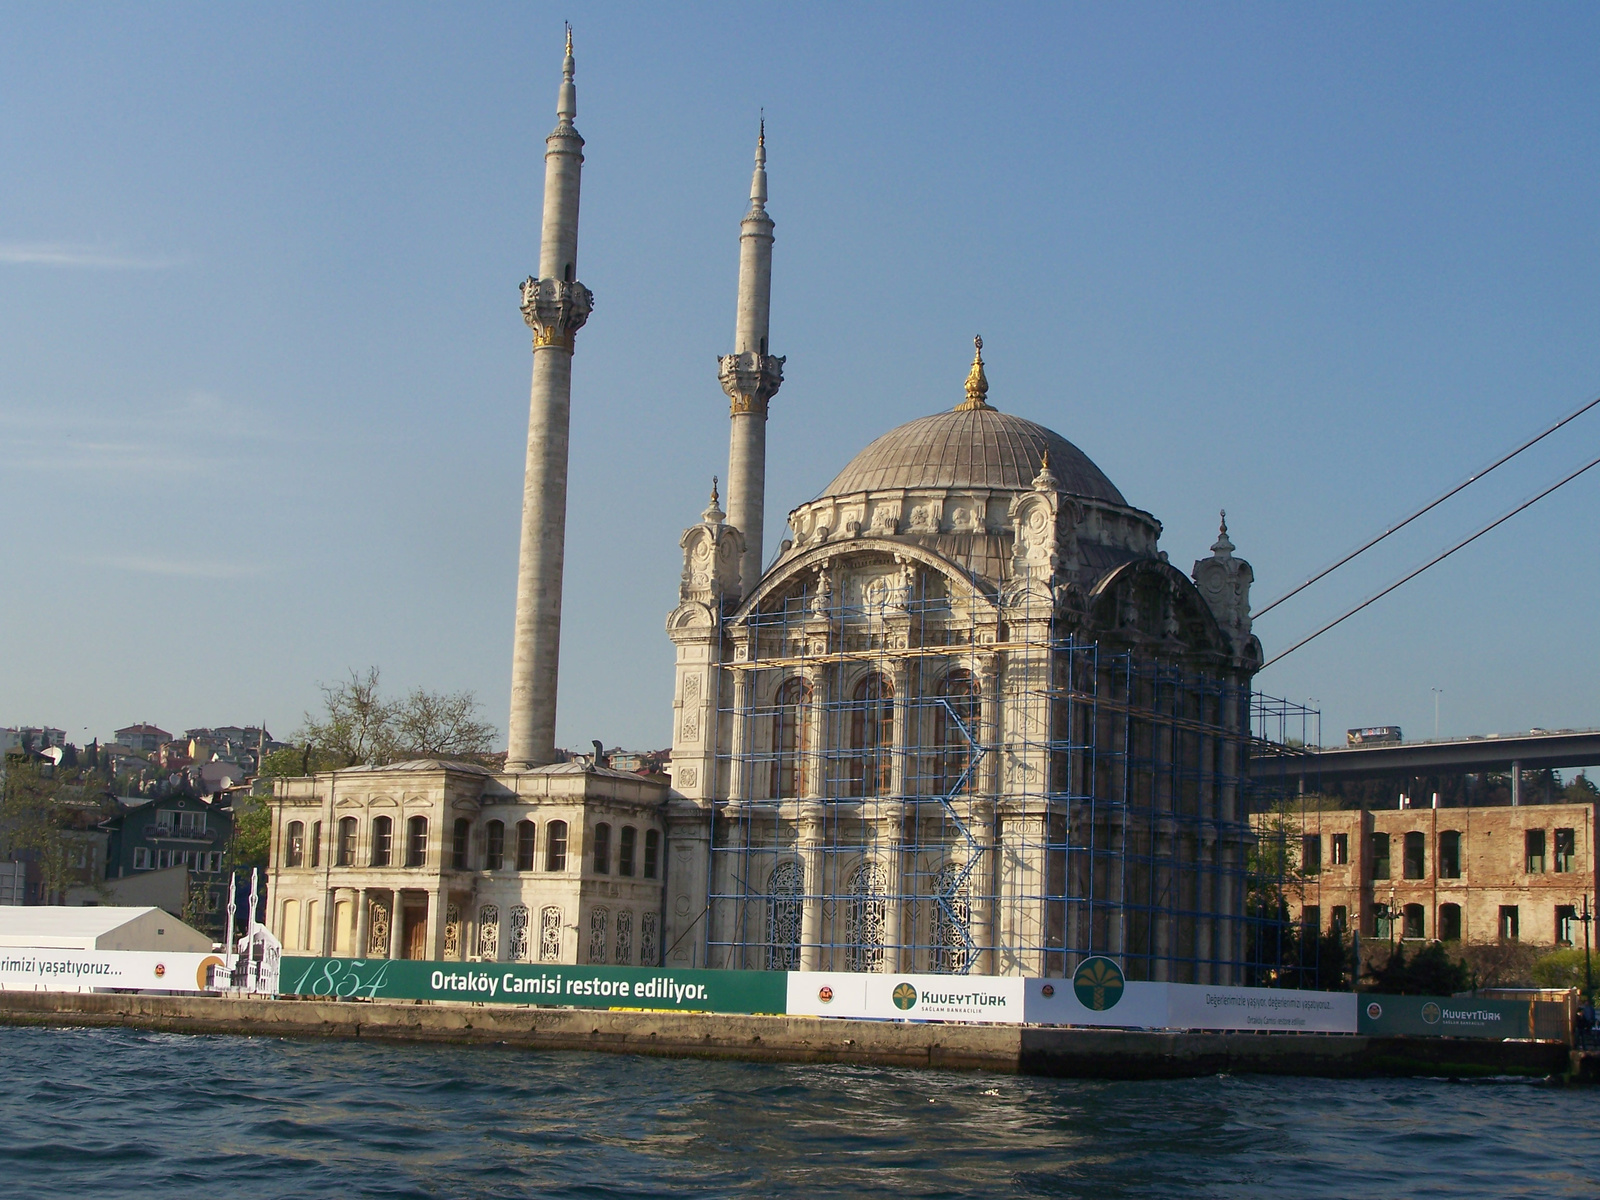 Isztambul, Ortaköy